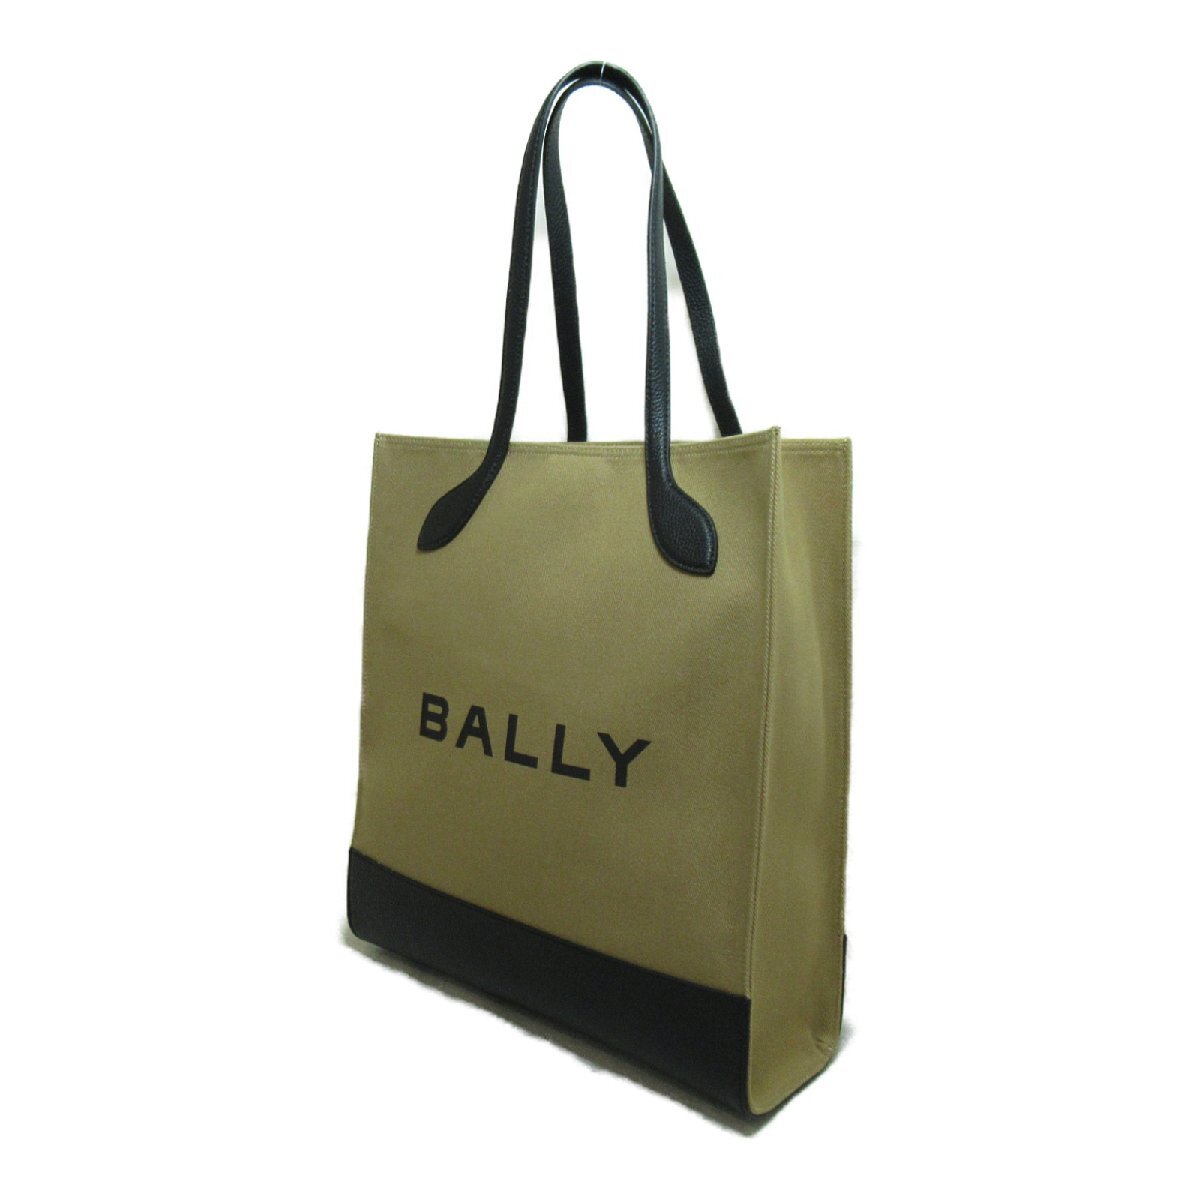  Bally большая сумка BAR KEEP ON NS бренд off BALLY ткань большая сумка ткань / кожа женский 